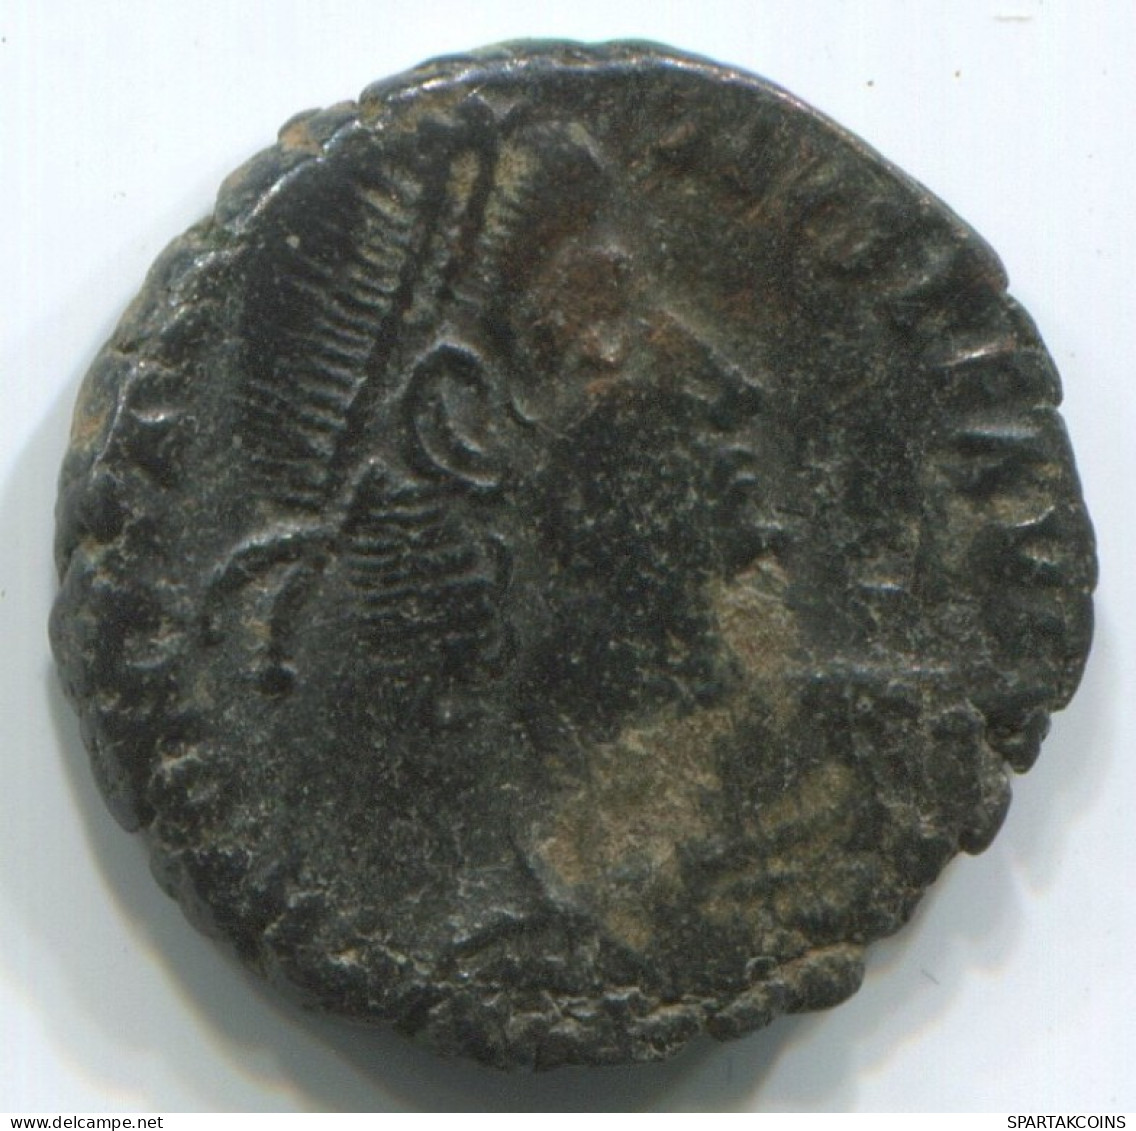 LATE ROMAN EMPIRE Pièce Antique Authentique Roman Pièce 2.5g/17mm #ANT2432.14.F.A - La Fin De L'Empire (363-476)